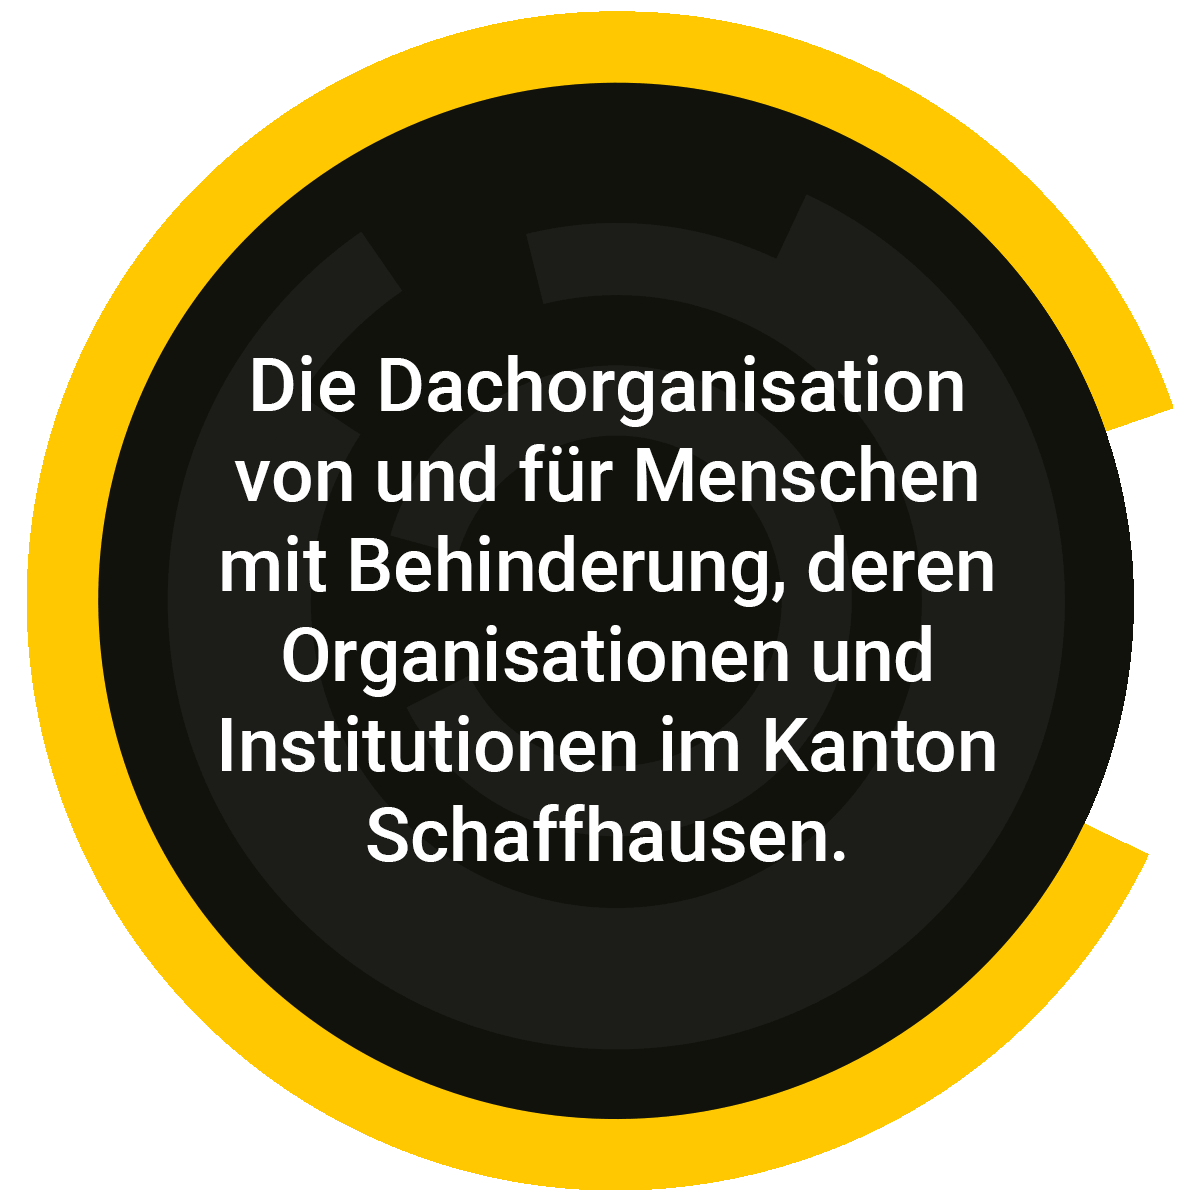 Die Dachorganisation von und für Menschen mit Behinderung, deren Organisationen und Institutionen im Kanton Schaffhausen.